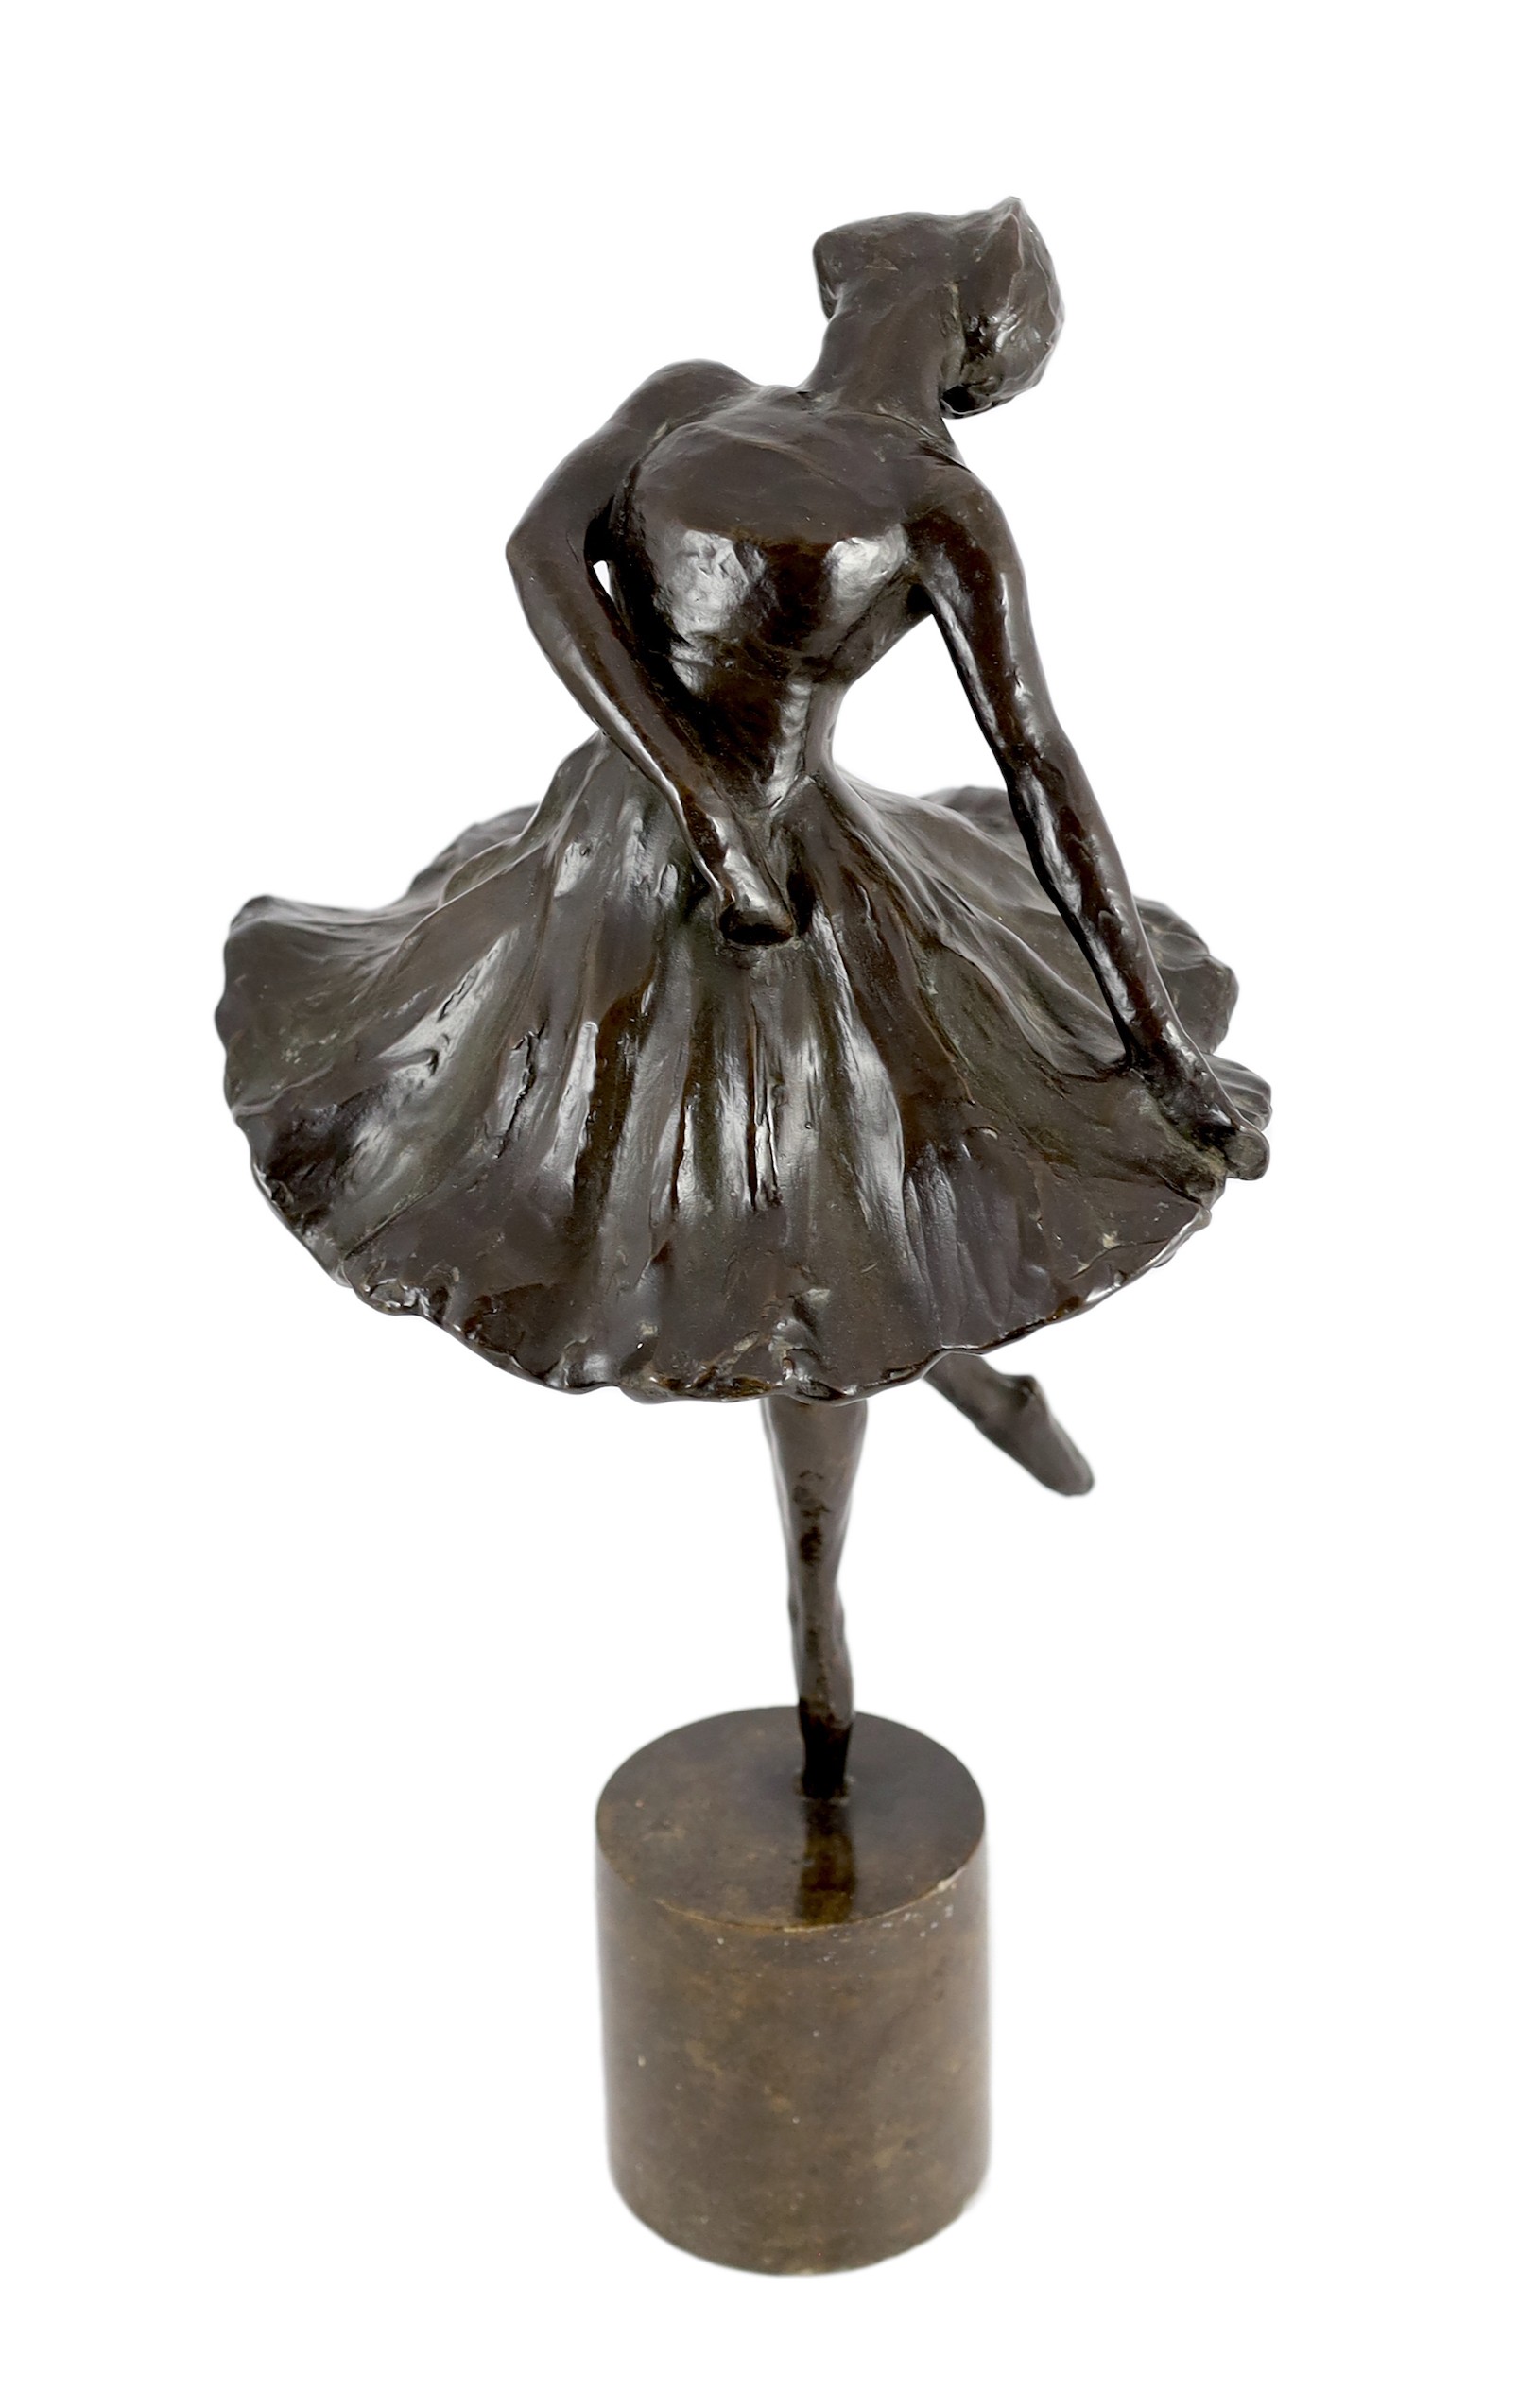 Serafin Nikolaevich Sud'binin (Russian, 1867-1944). A bronze figure of the ballerina Tamara Karsavina height 54cm                                                                                                           